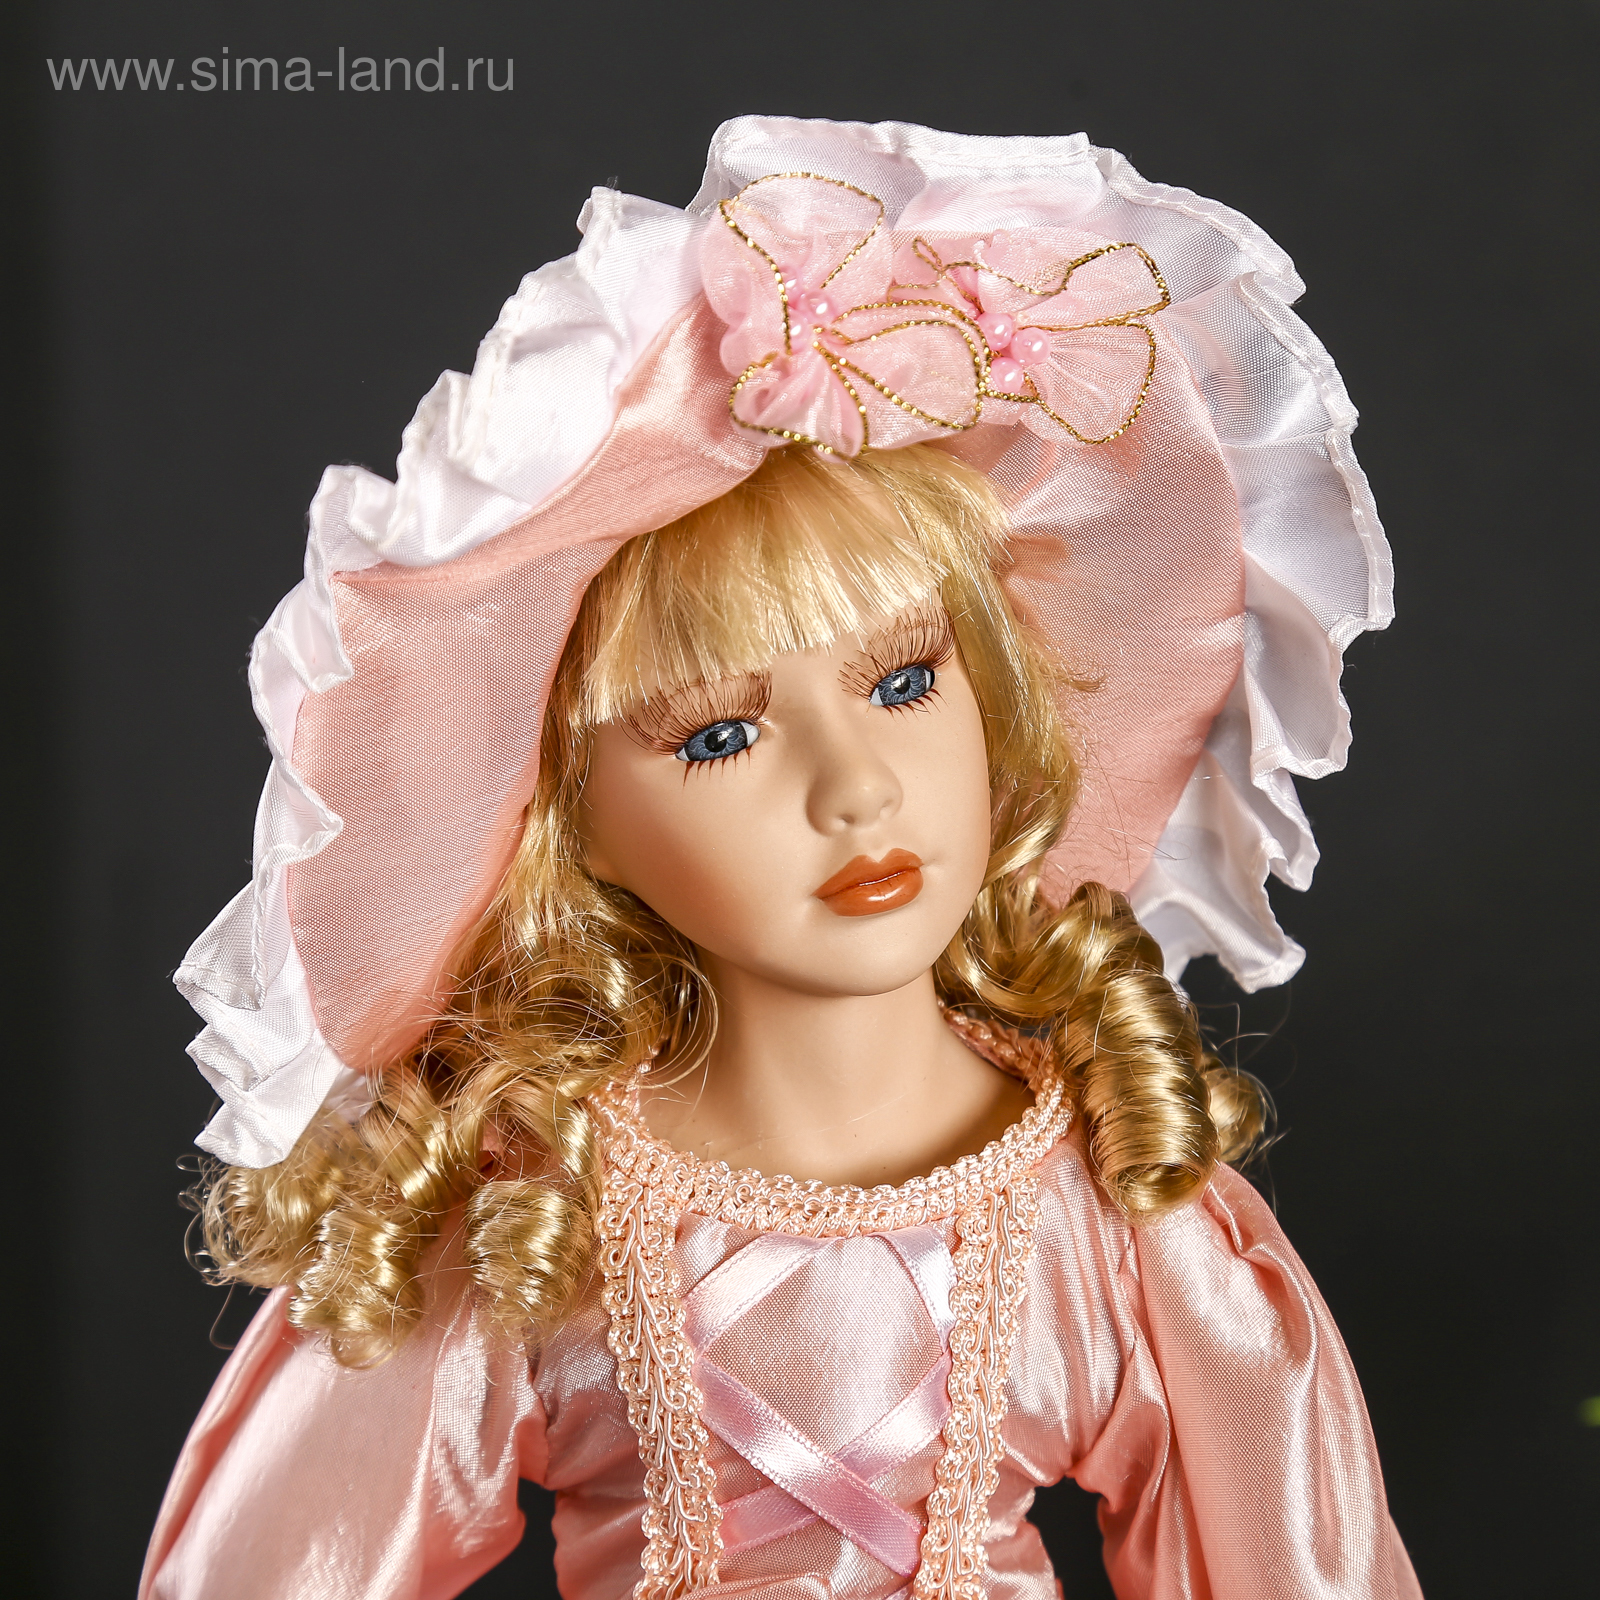 Купить коллекцию кукол. Кукла фарфоровая. Фарфоровые куклы коллекционные. Красивые фарфоровые куклы. Керамические куклы коллекционные.